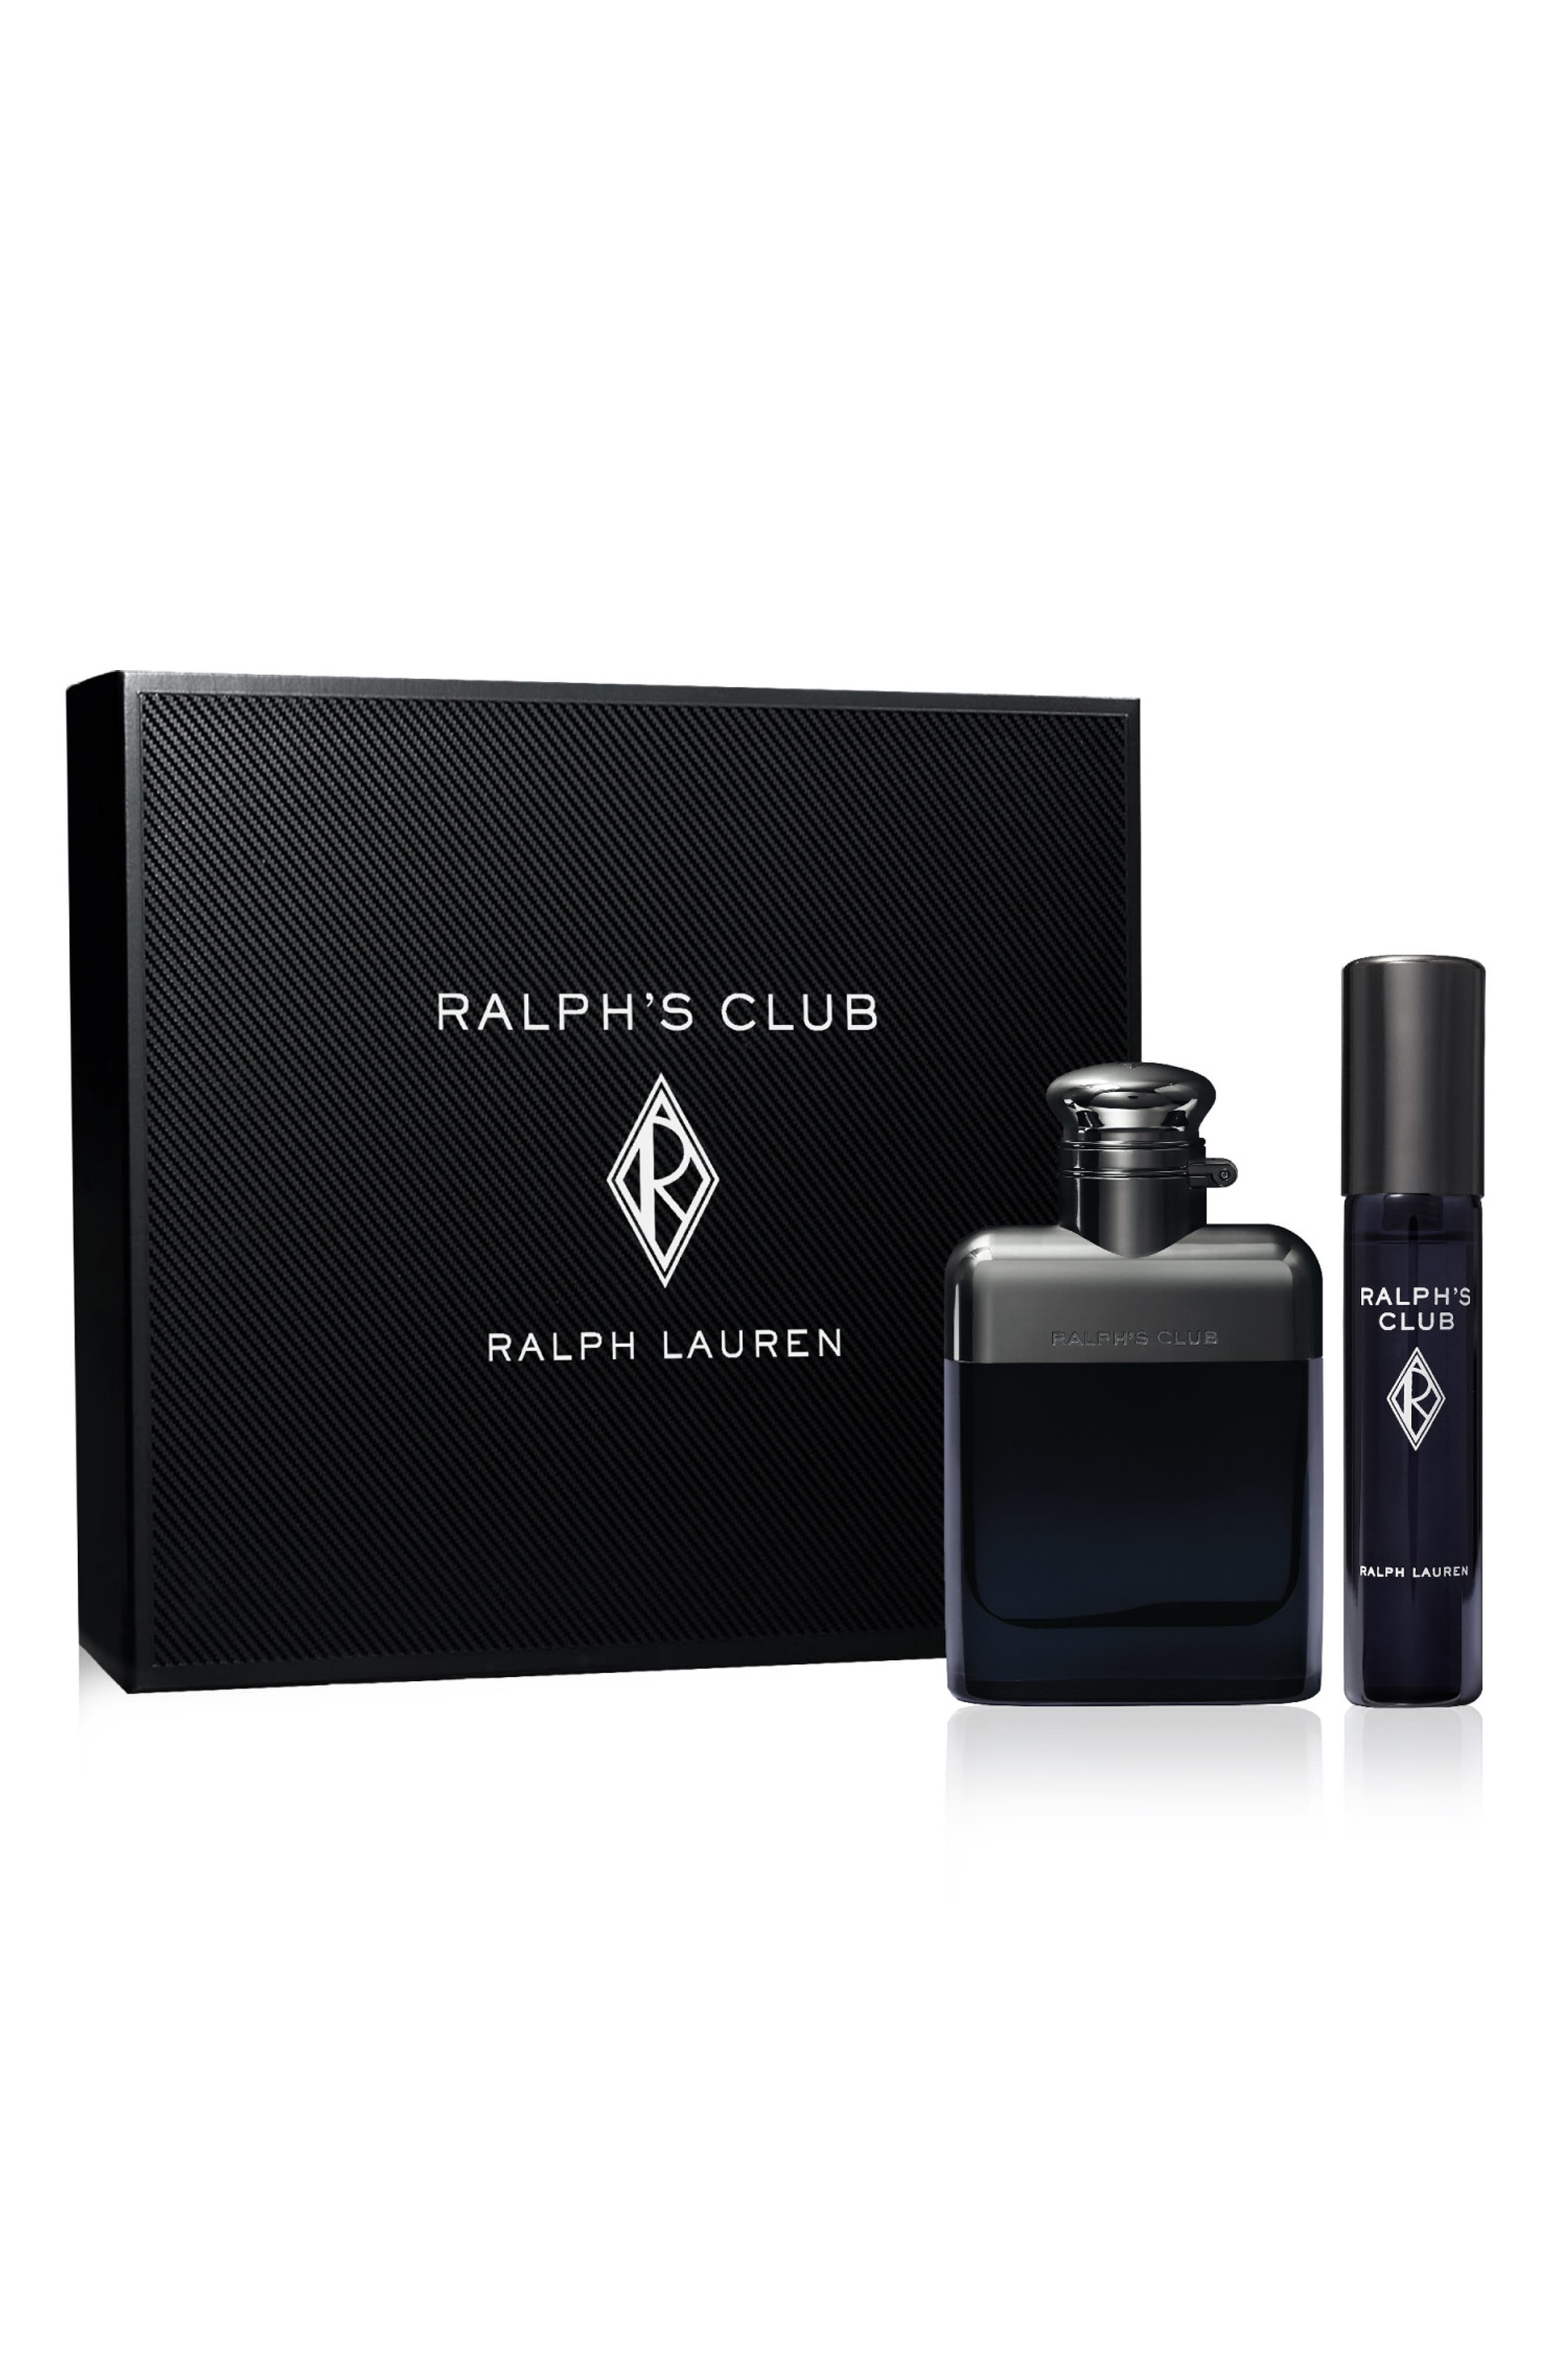 Ralph Lauren Ralph's Club Eau de Parfum Set USD $112 Value at Nordstrom